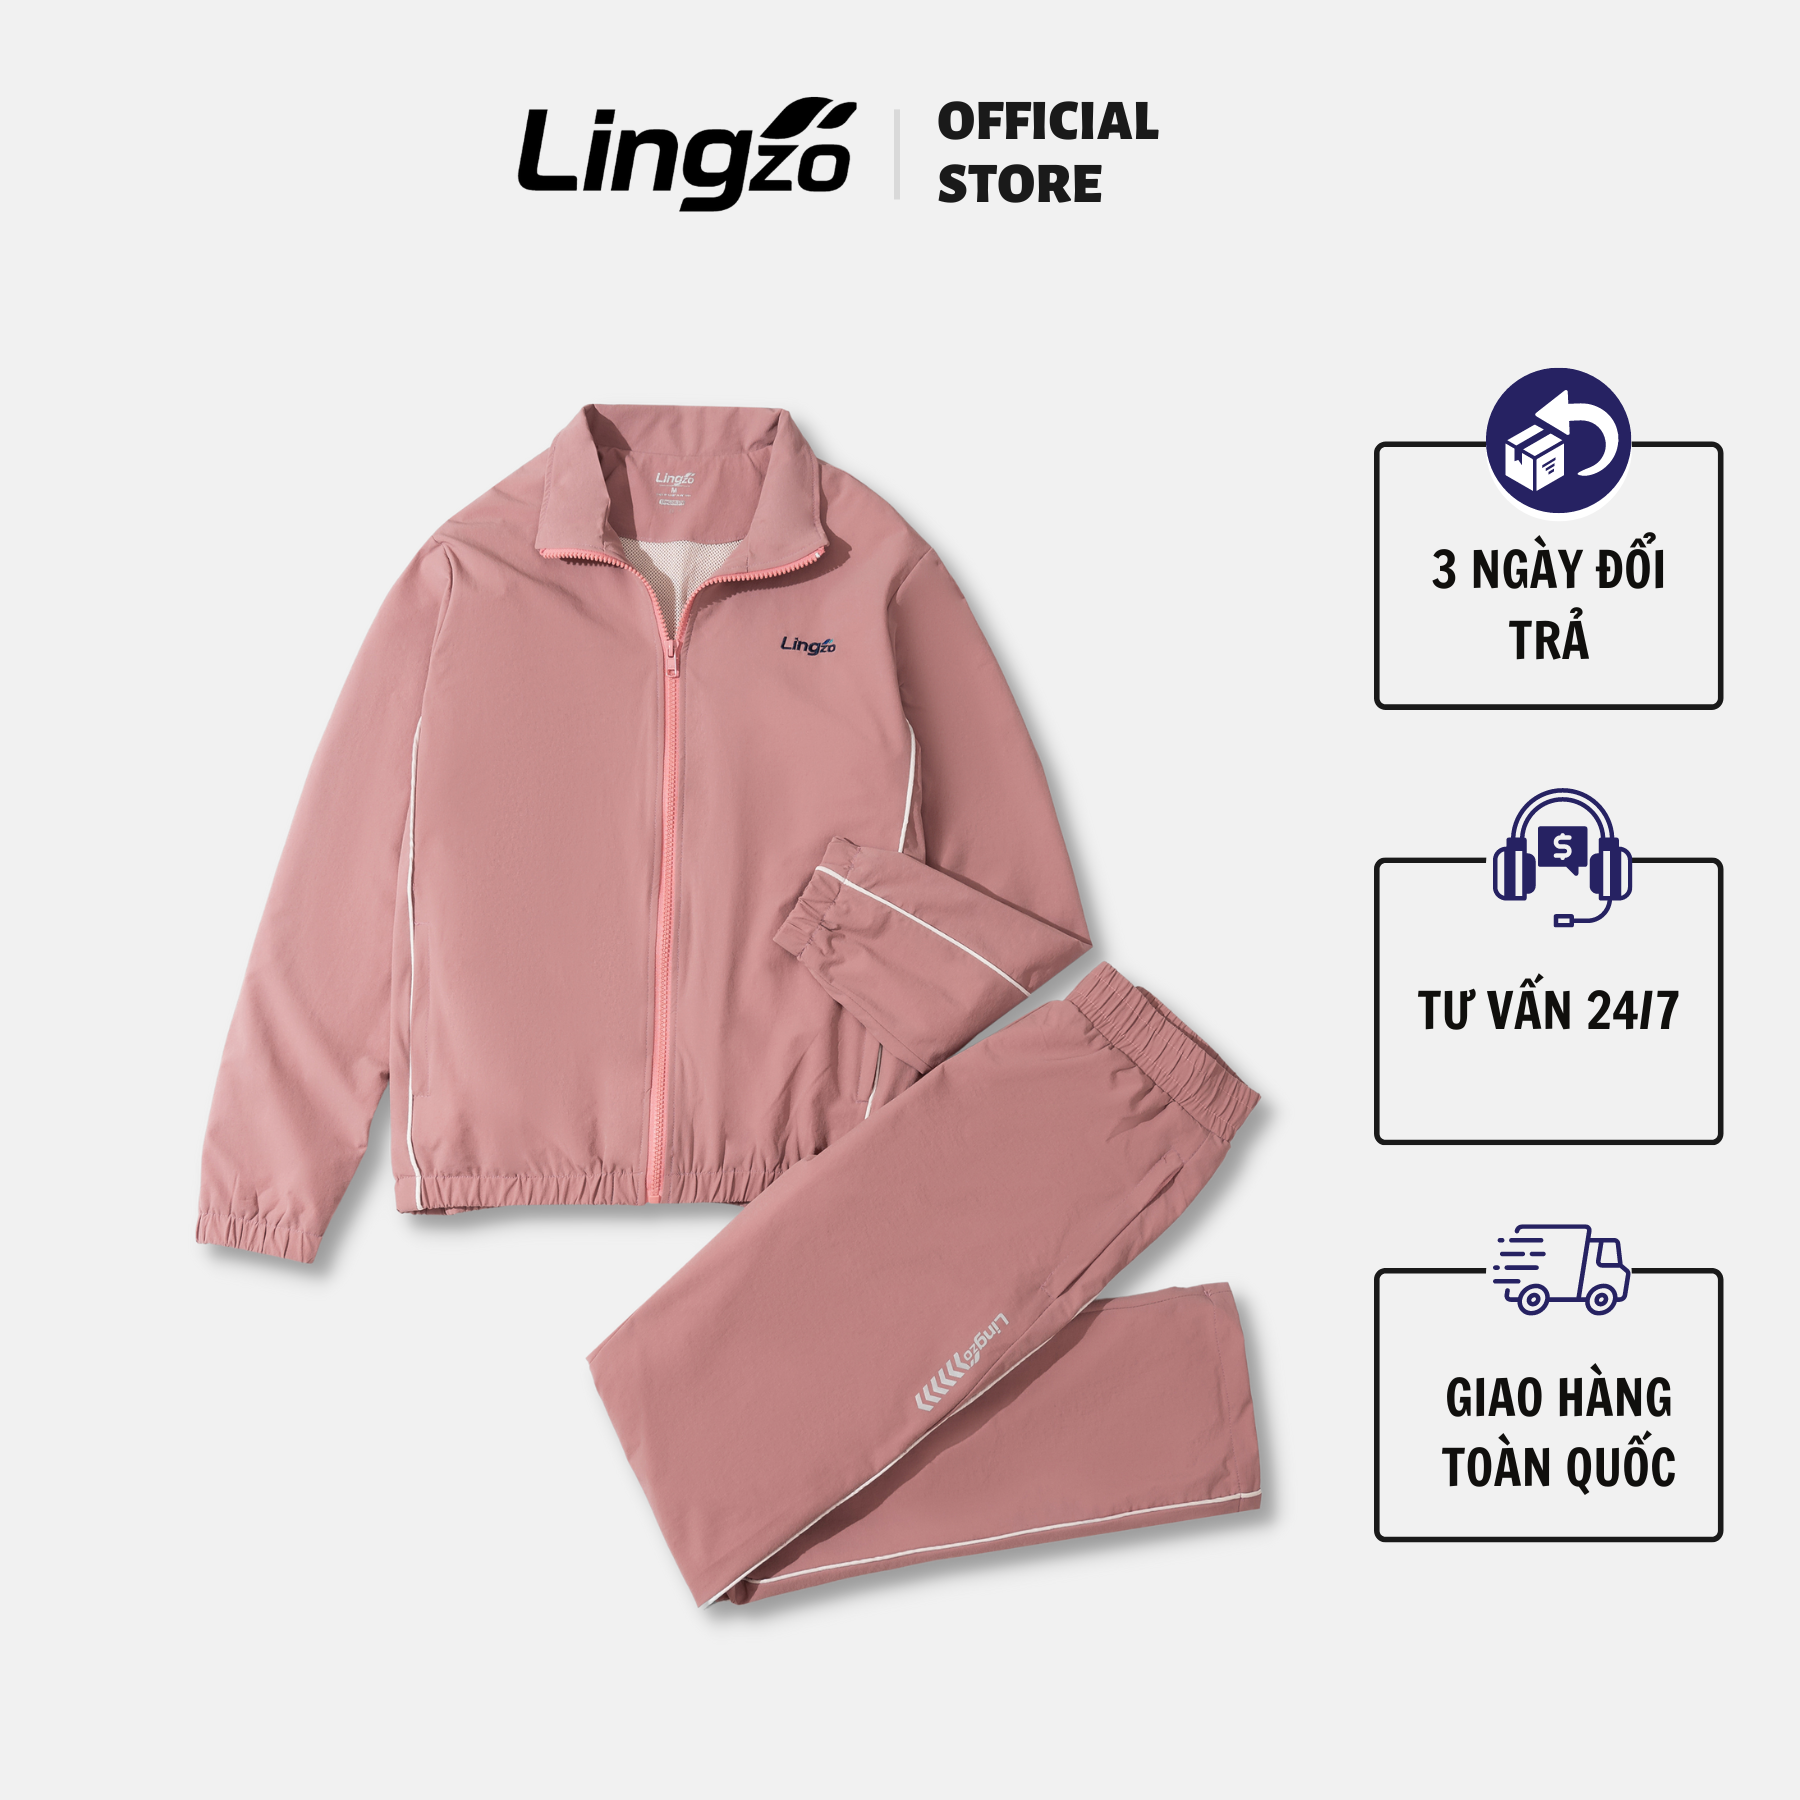 Bộ quần áo gió thể thao nữ cao cấp LINGZO set đồ bộ thể thao 2 lớp thu đông hàng thiết kế chất liệu vải gió hạt cao cấp